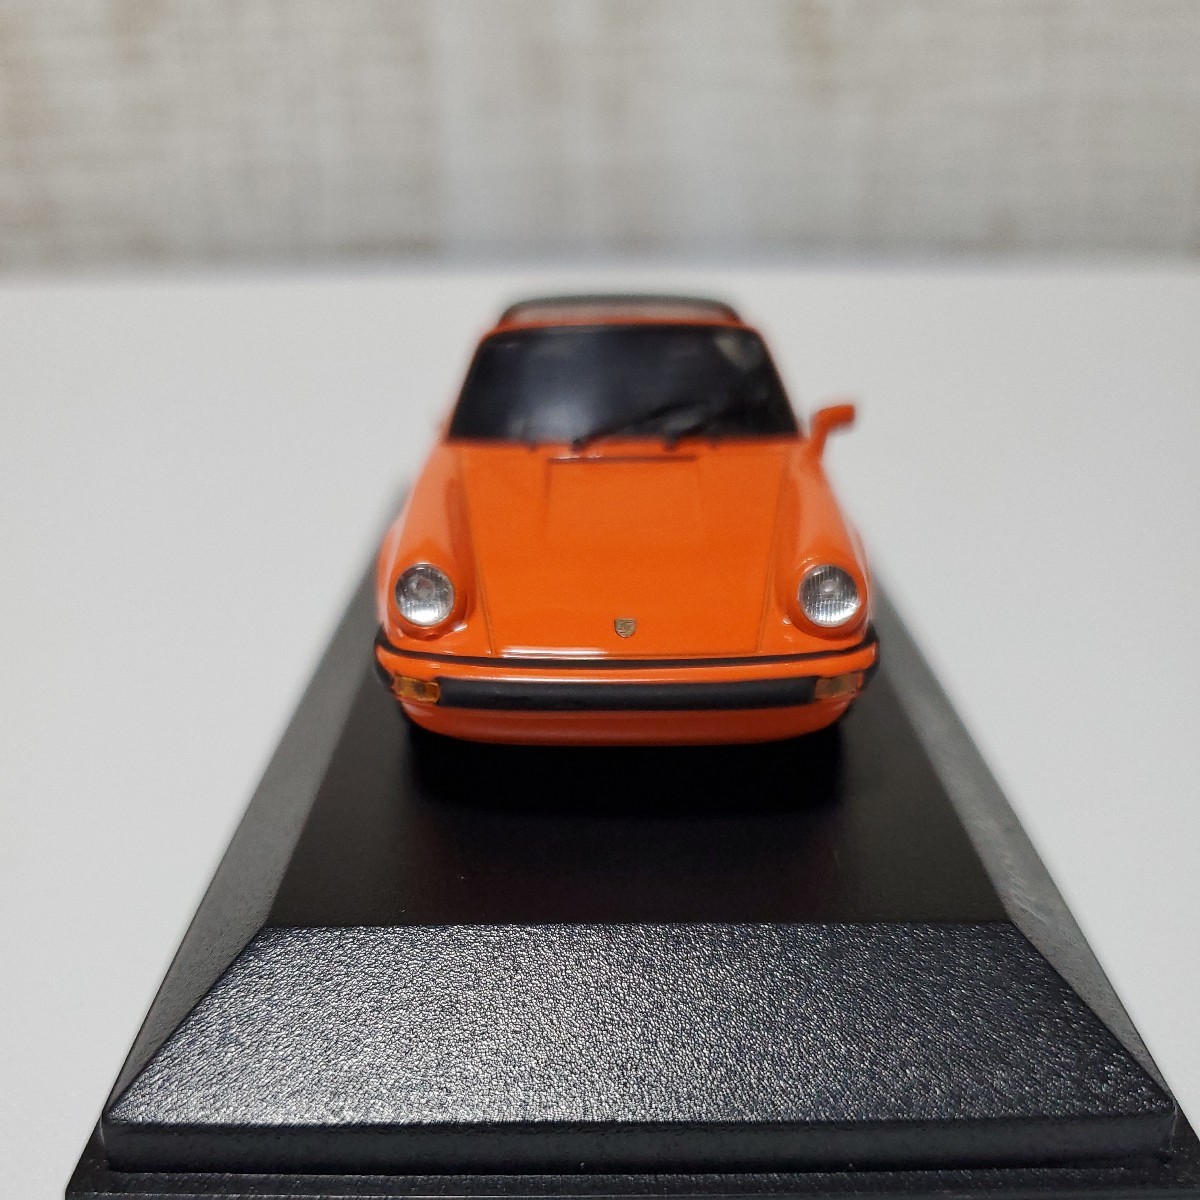 1/43 Minichamps MINICHAMPS миникар /Porsche 911 targa 1977 Orange/ Porsche 911 targa orange 